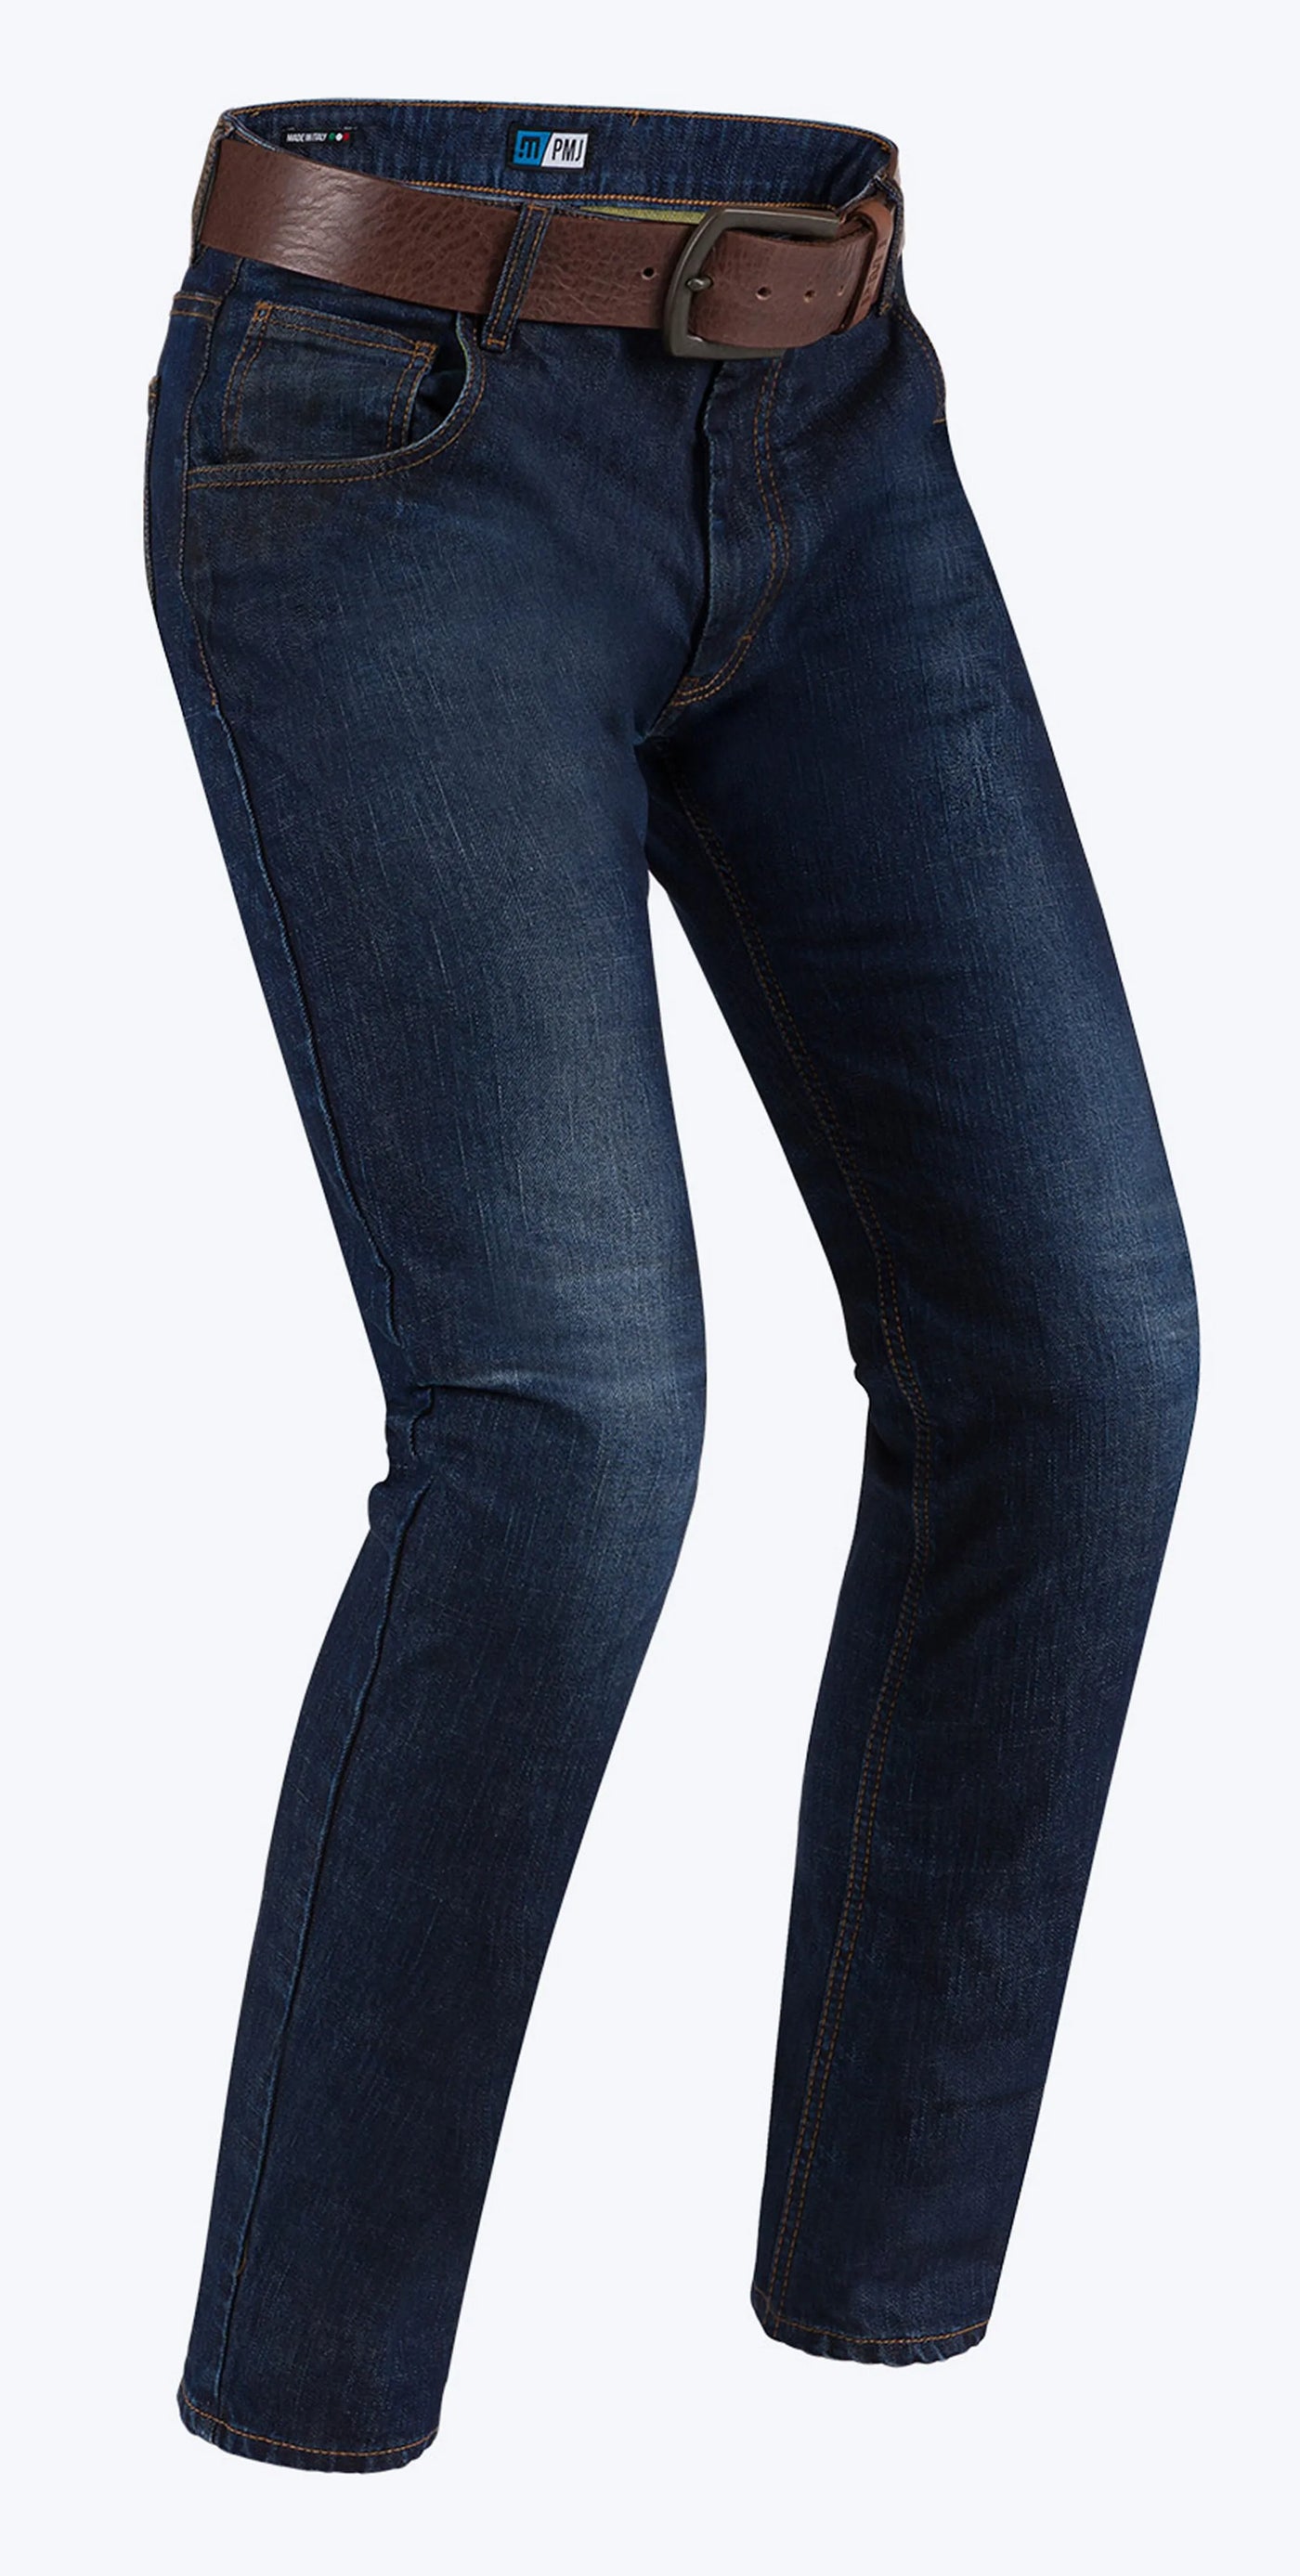 Bukse, Lengde 36, PMJ Deux jeans (Blå)